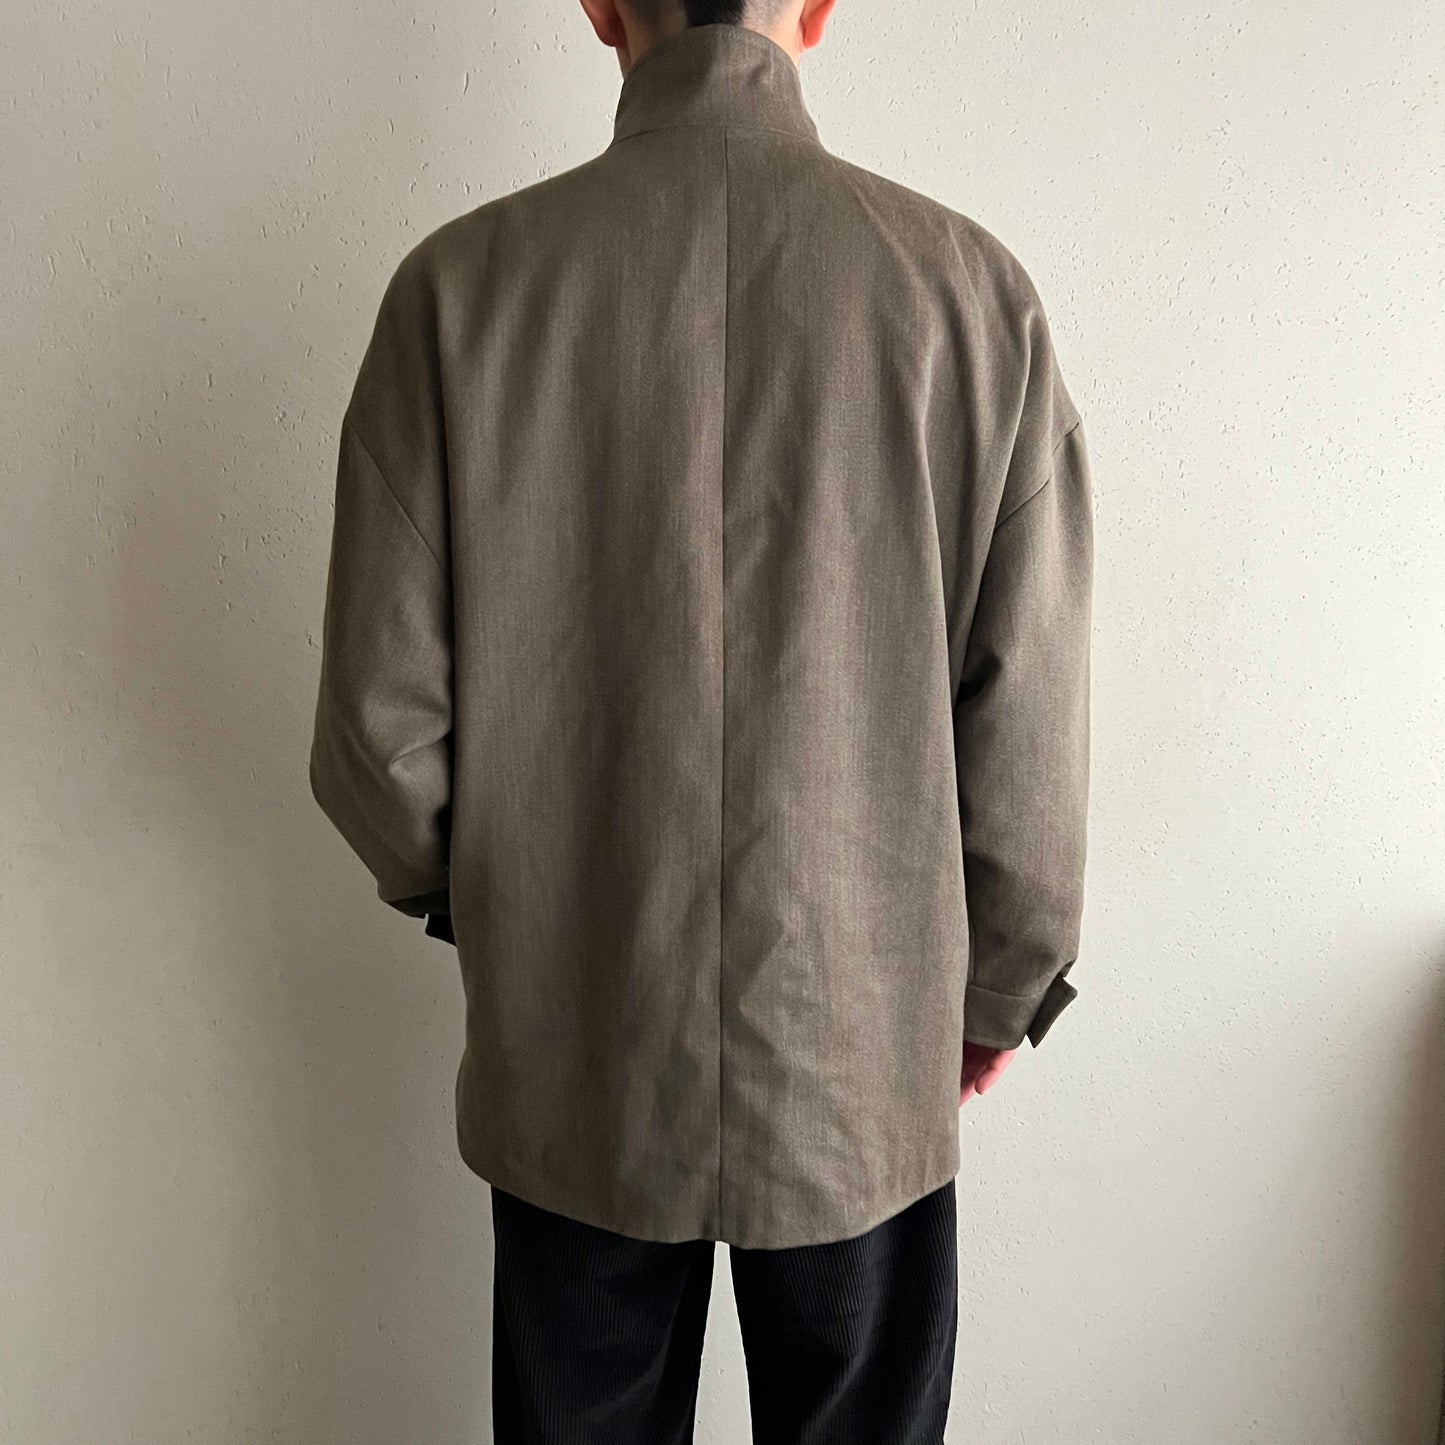 90s Wool Jacket